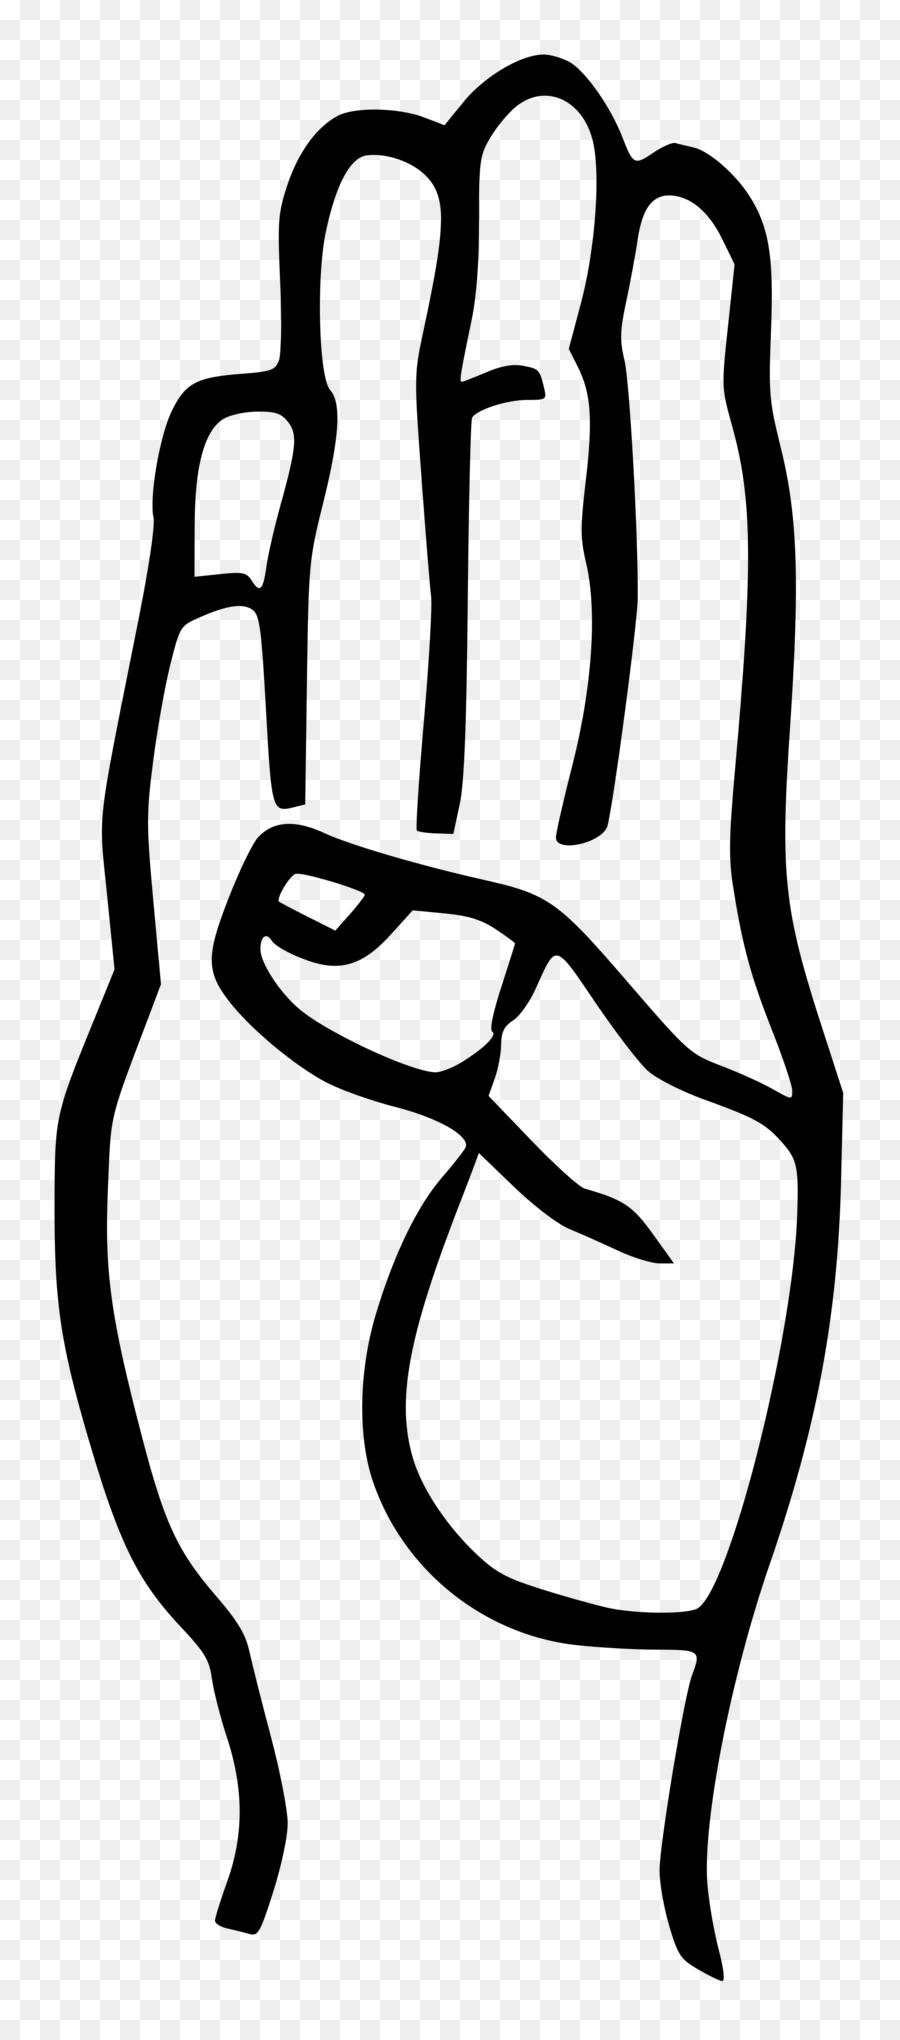 American Sign Language Brief - Britische Gebärdensprache